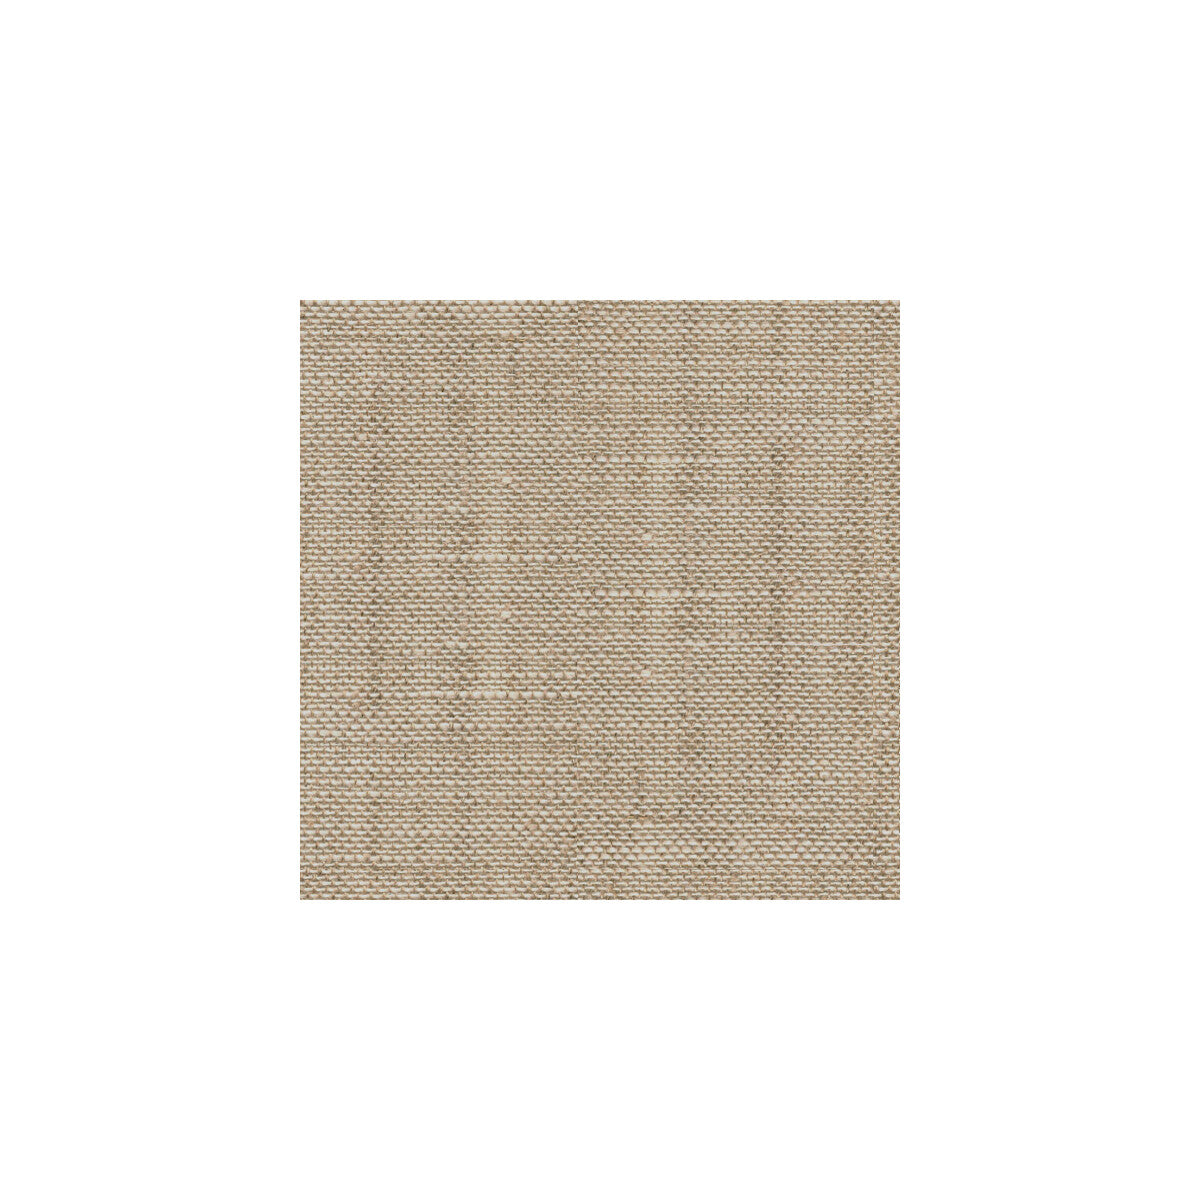 Kravet Basics fabric in 9935-1116 color - pattern 9935.1116.0 - by Kravet Basics